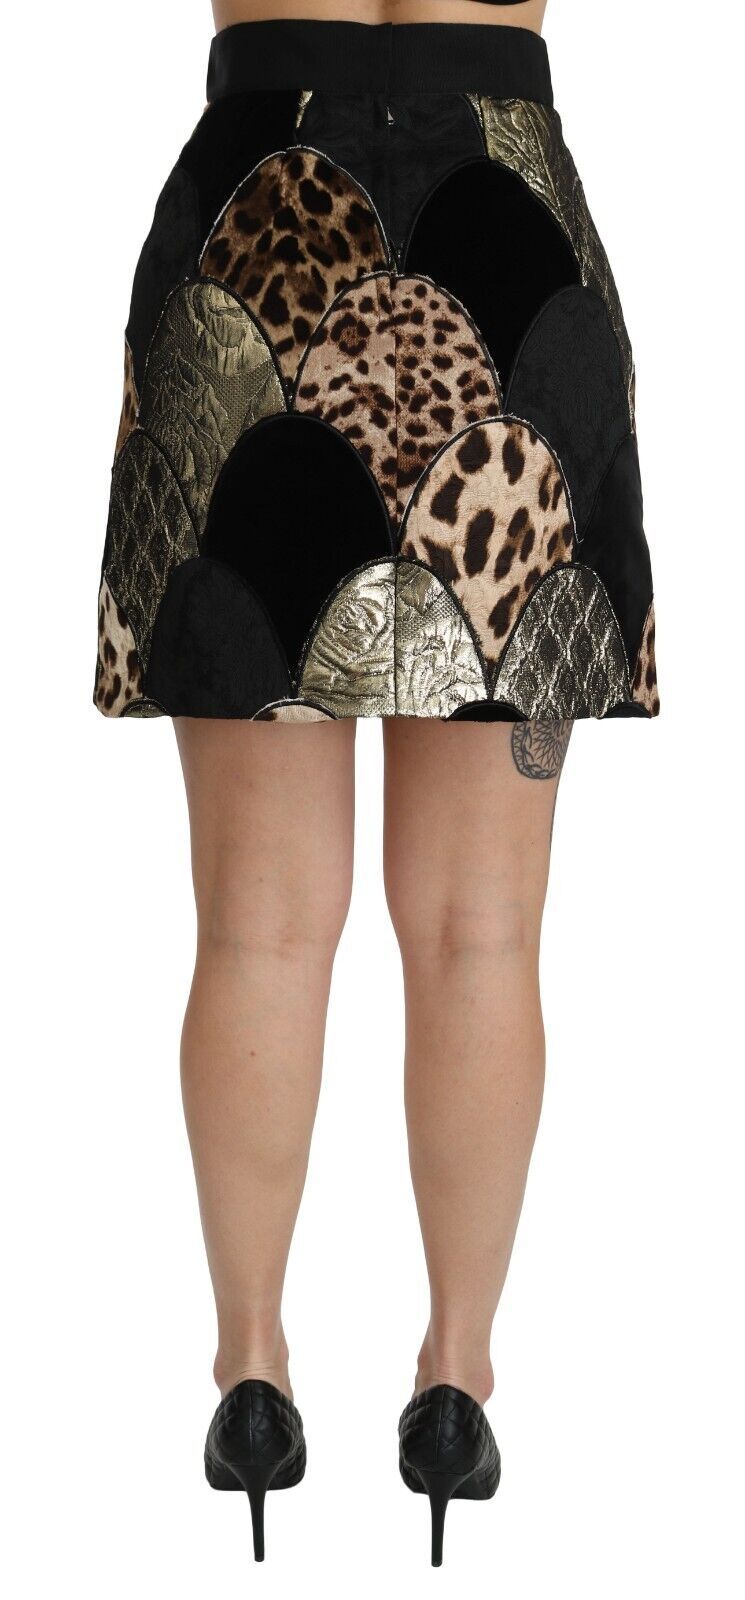 Dolce & Gabbana High-Waisted Leopard Print Women's Skirt